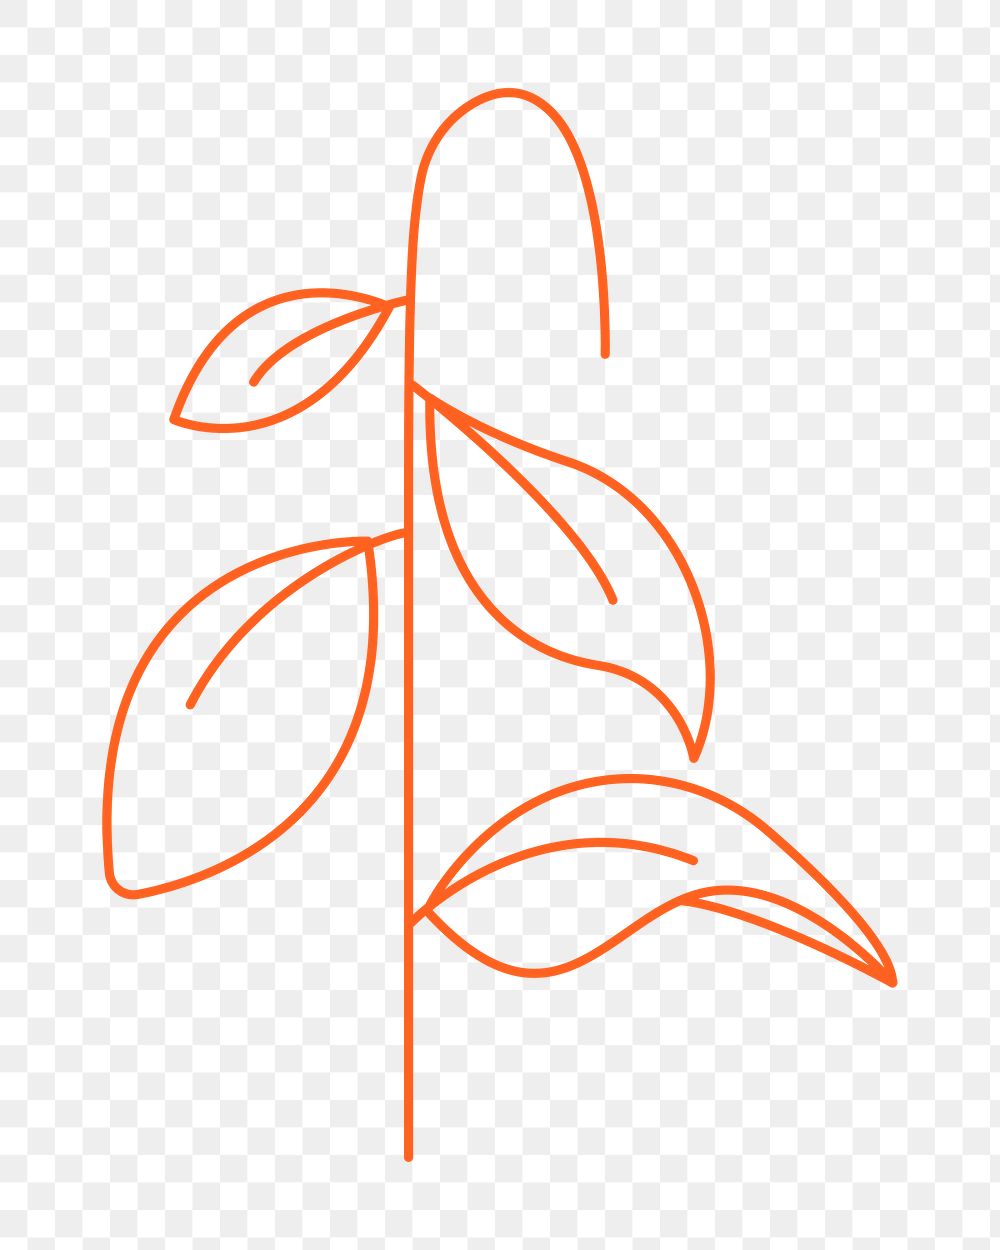 Minimal leaf png sticker, botanical collage element